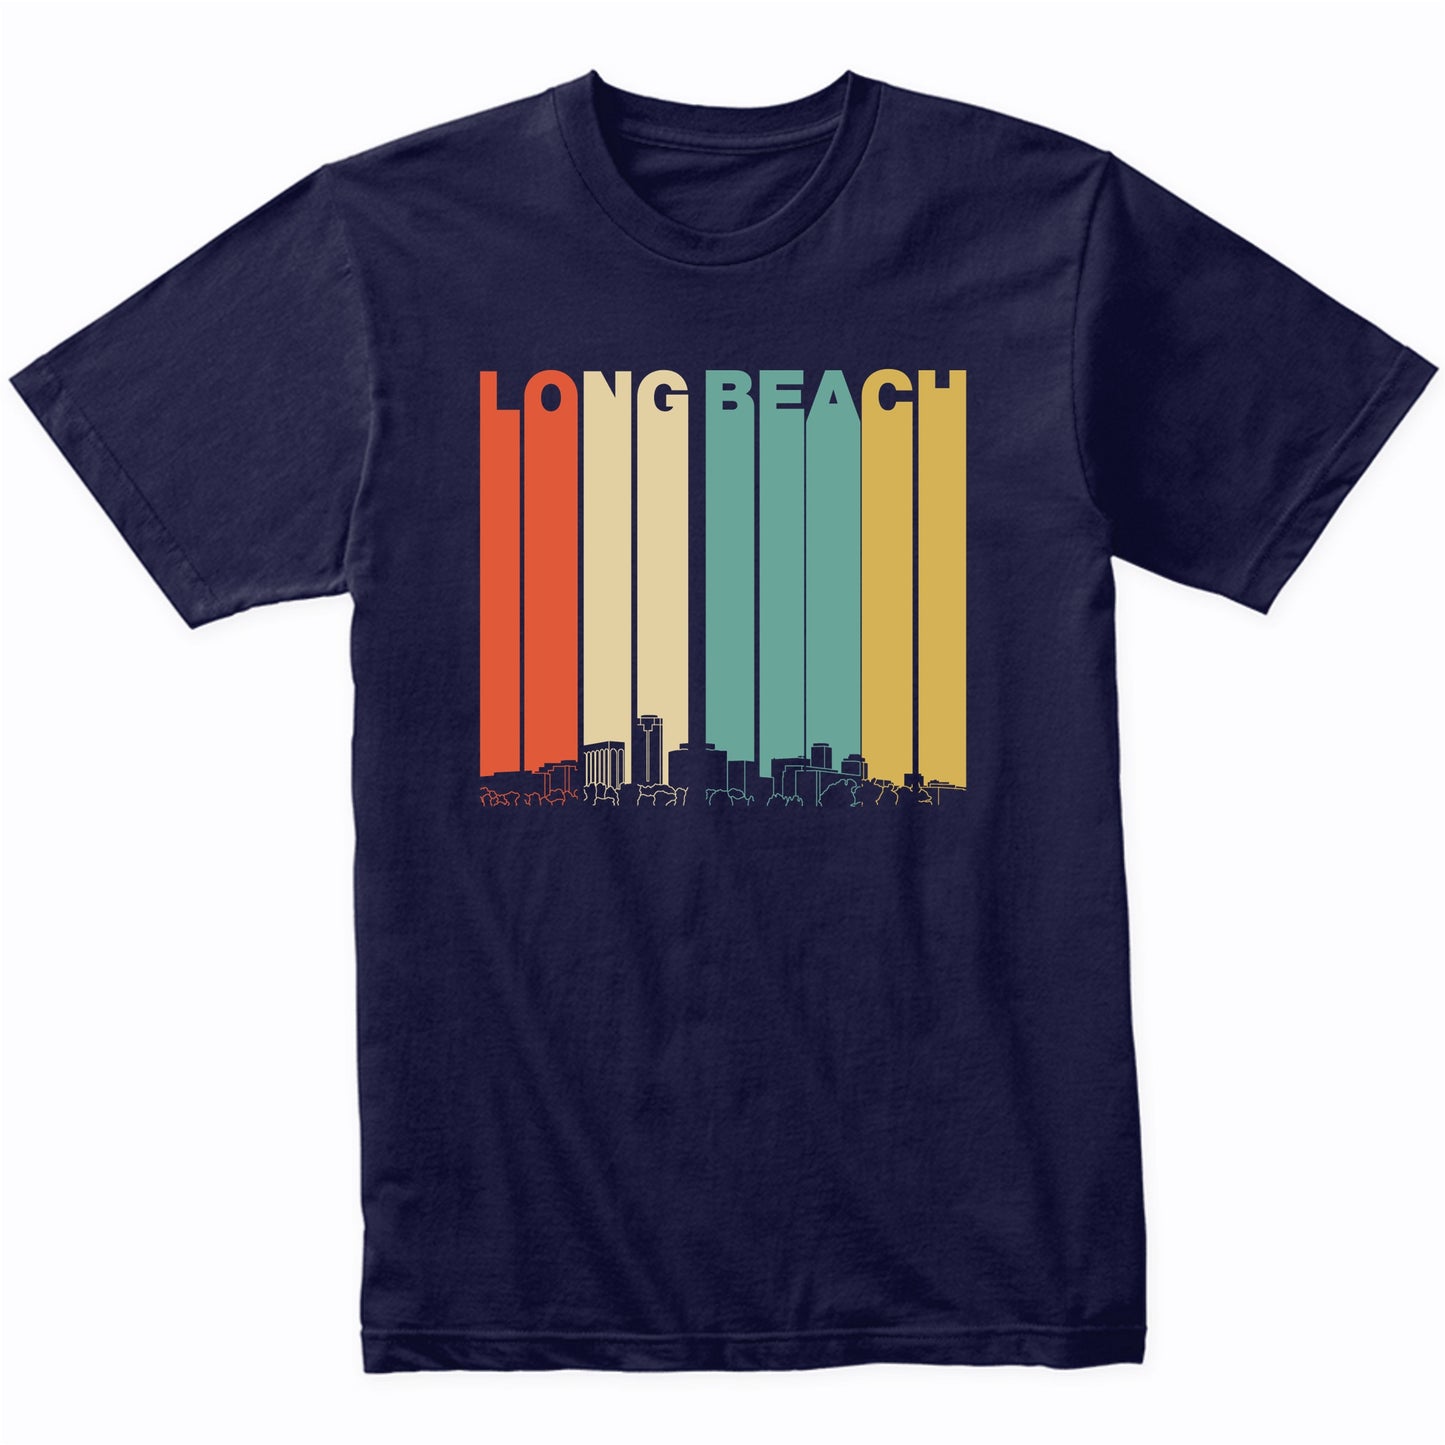 Vintage 1970's Style Long Beach California Skyline T-Shirt